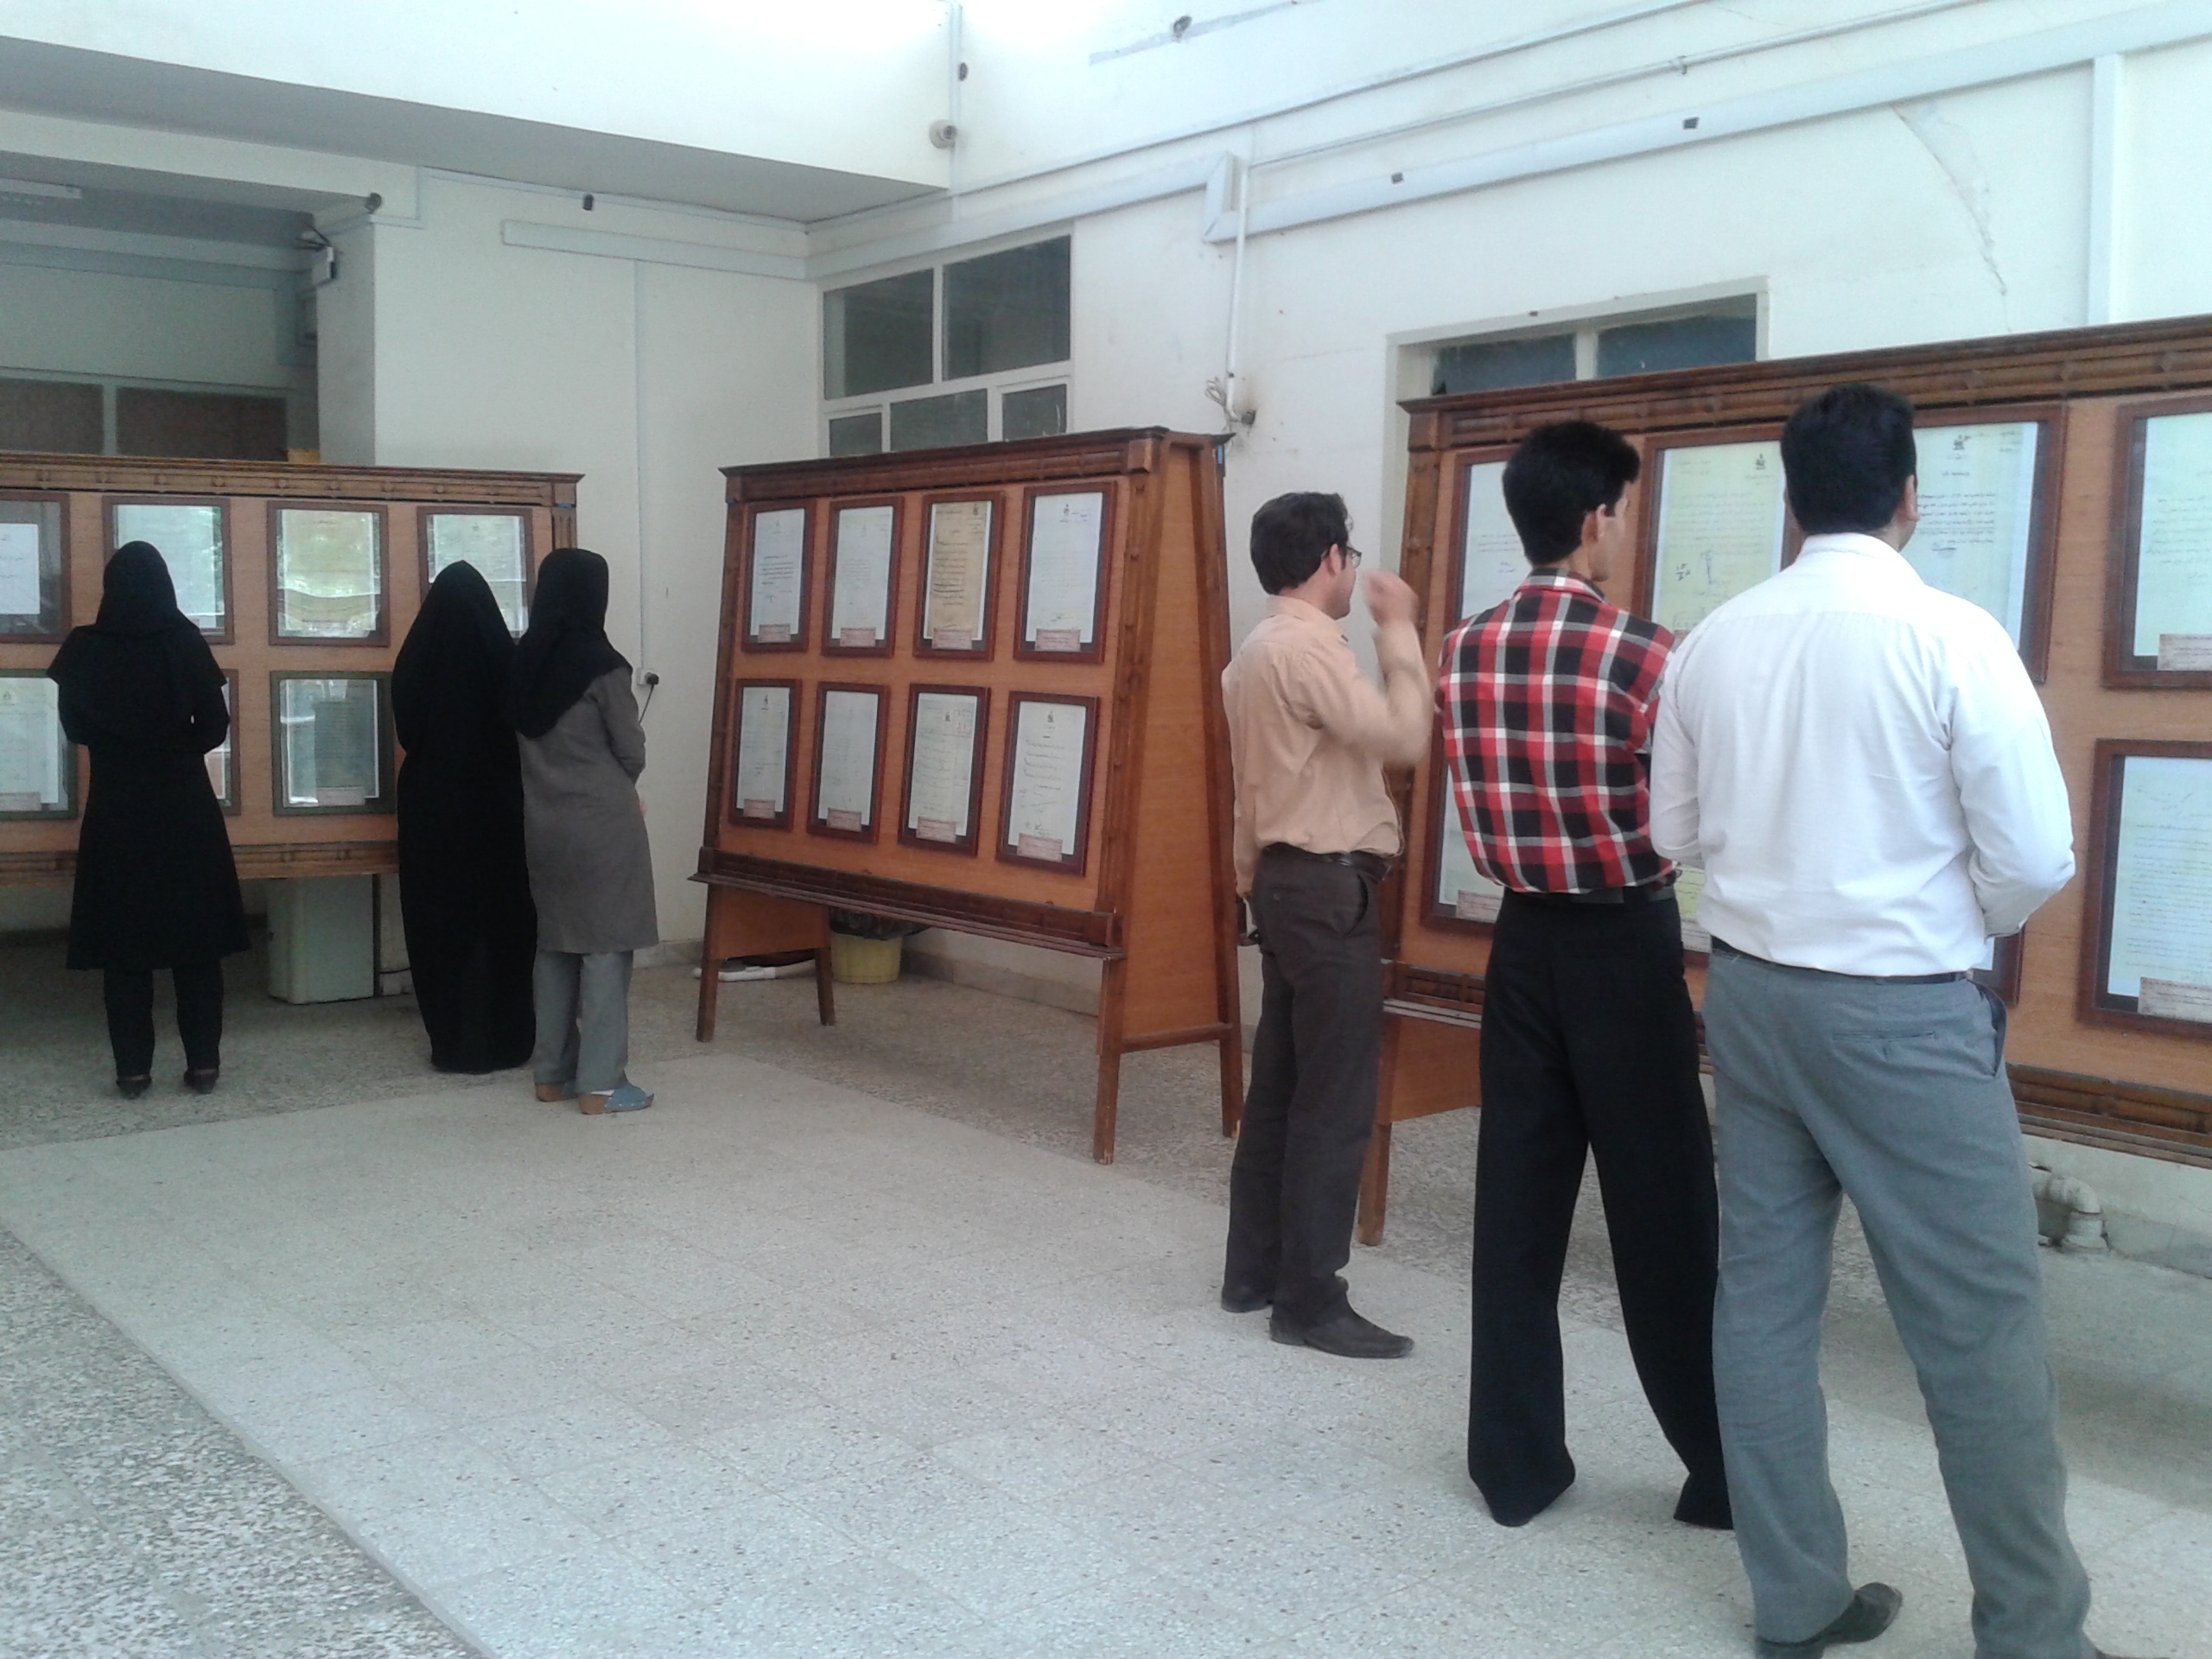 نمایشگاه به مناسبت روز قلم توسط مدیریت کرمان